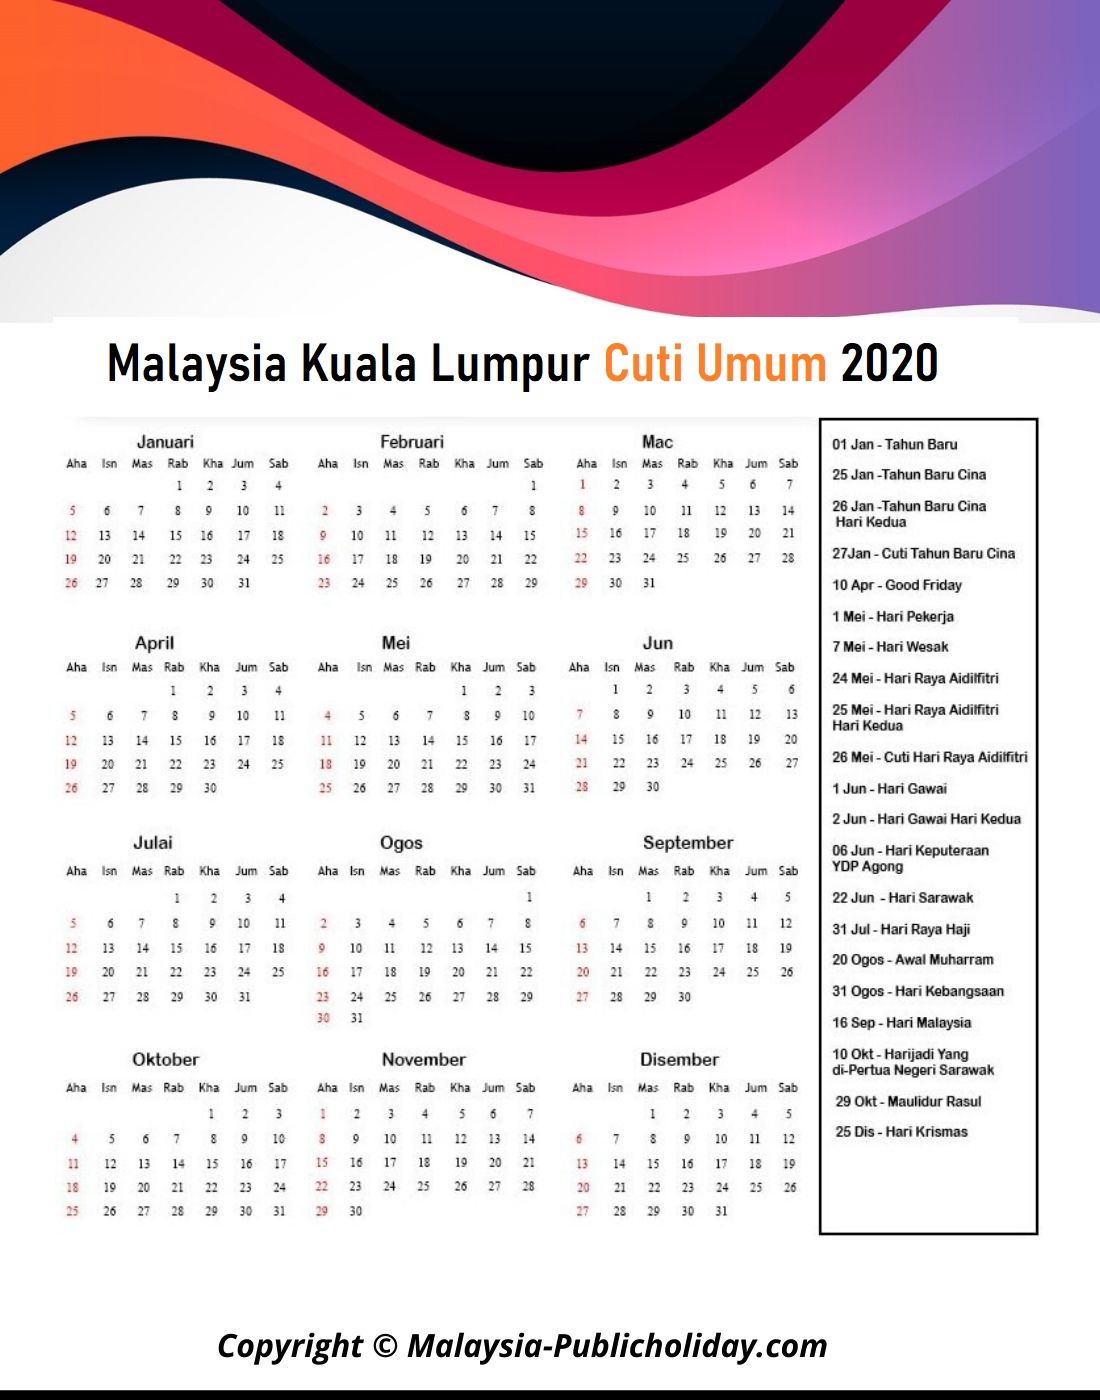 Cuti Umum Kuala Lumpur 2020